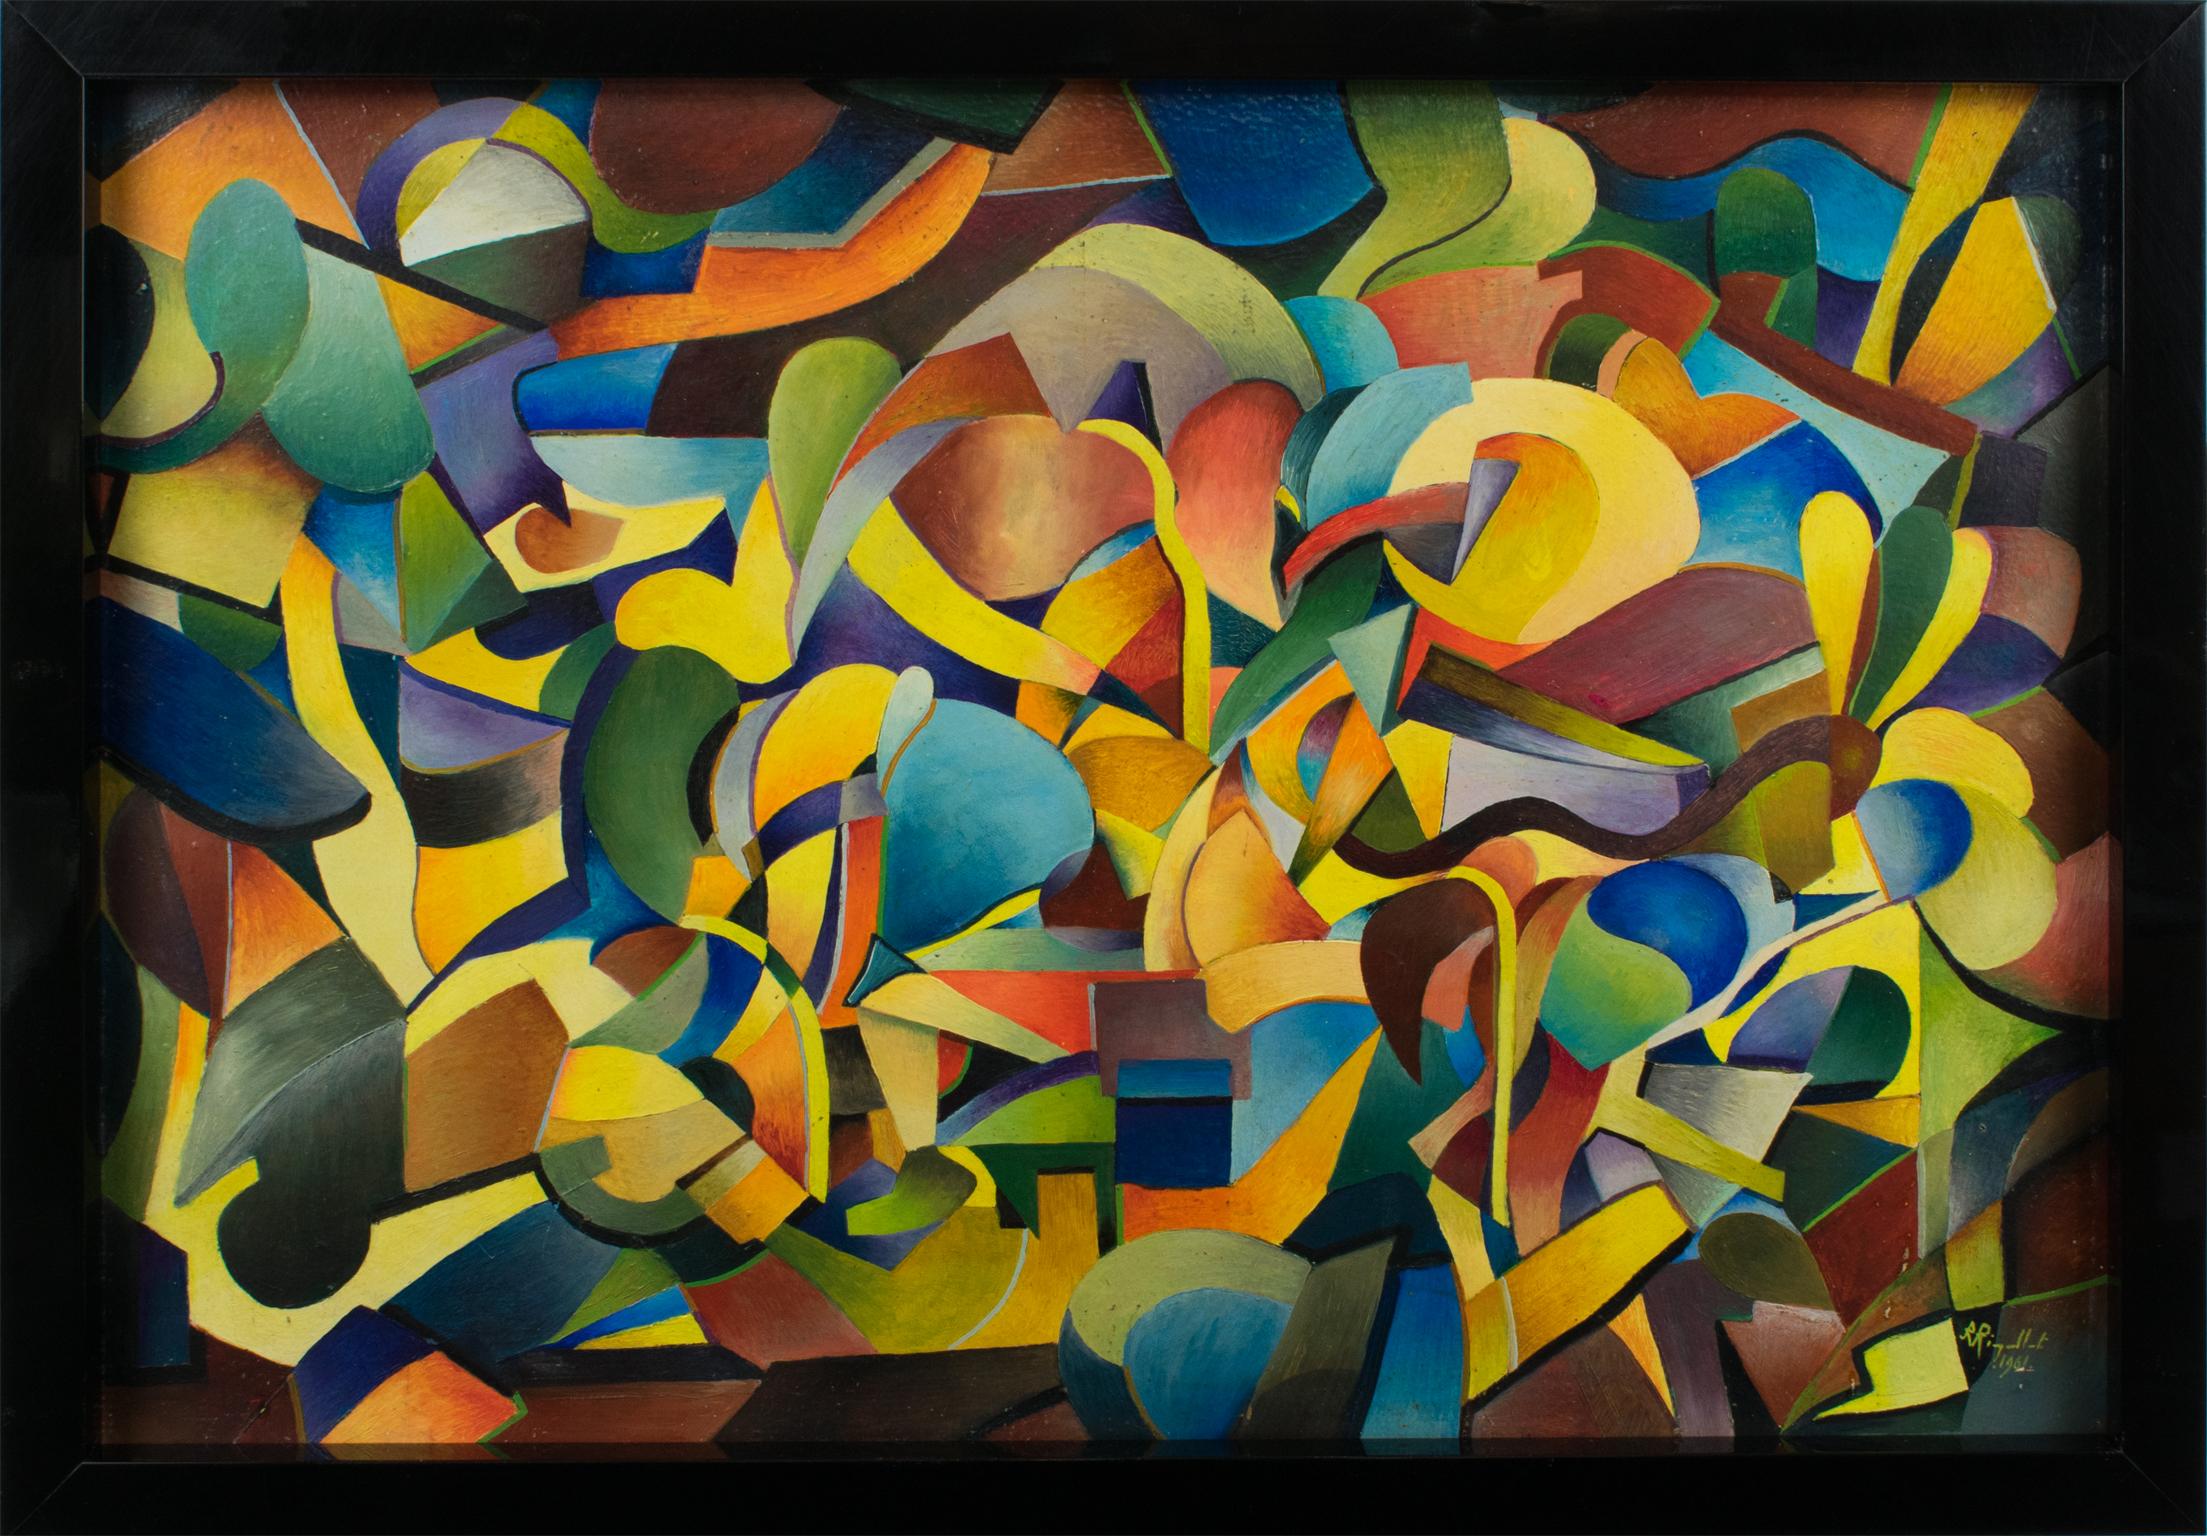 Cette envoûtante peinture abstraite post-cubiste et coloriste à l'huile sur panneau a été conçue par A. Rigollot (France, 20e siècle).
Les peintures coloristes se caractérisent par une utilisation intense de la couleur, qui devient la